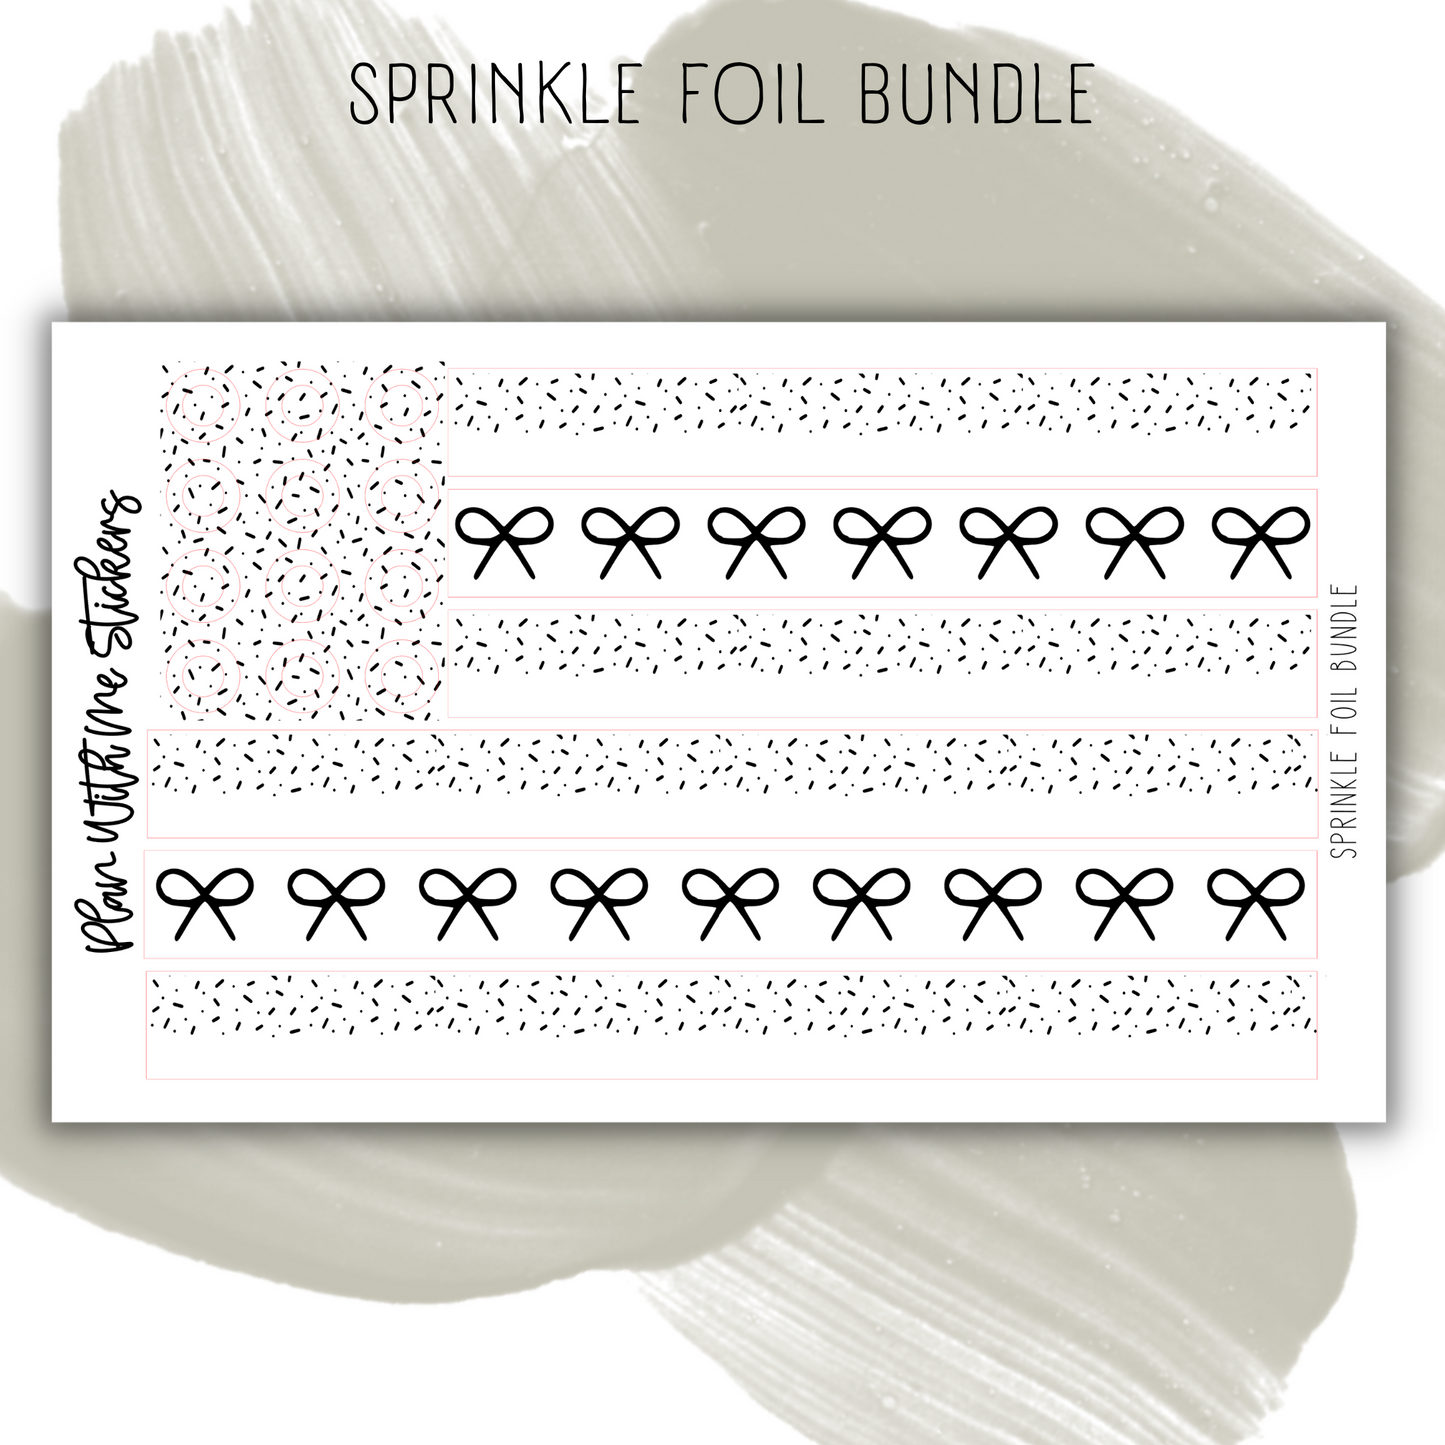 Sprinkle Foil Bundle